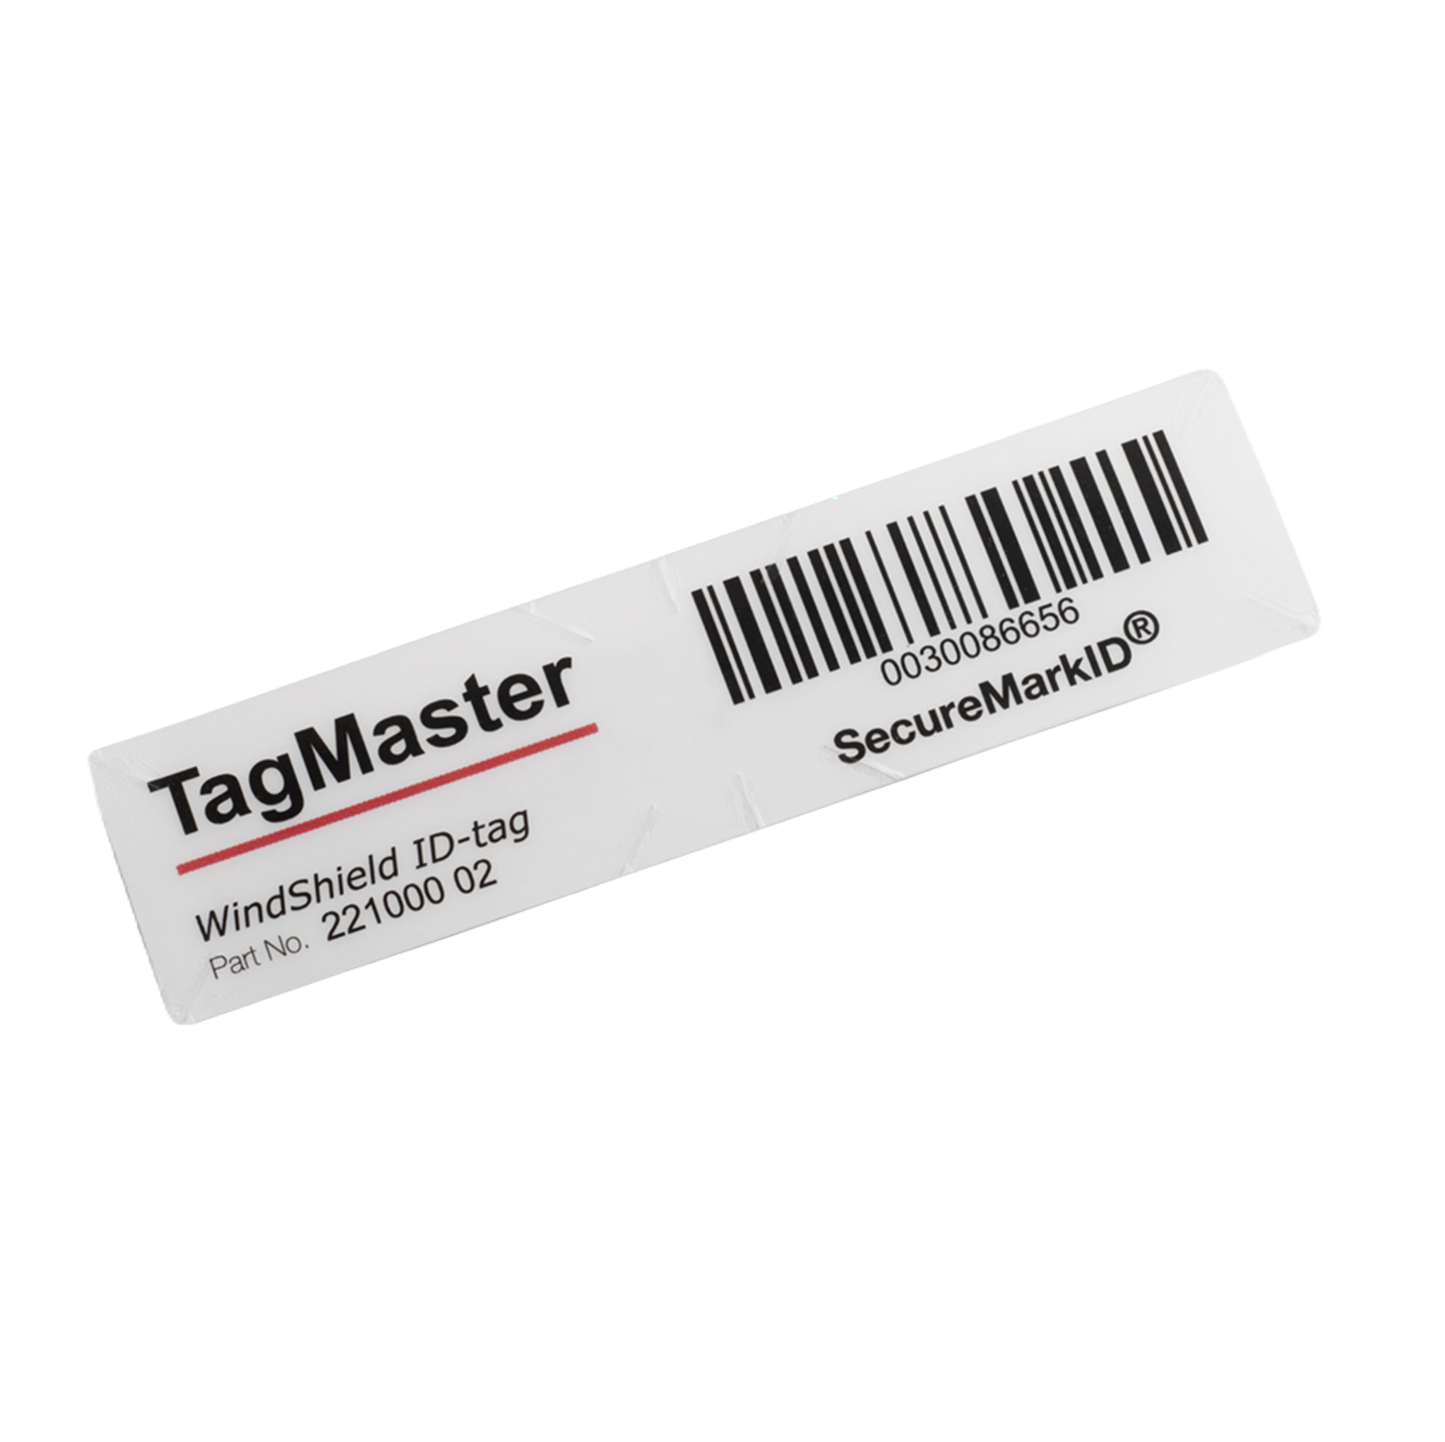 TagMaster SecureMarkID WindShield ID 标签